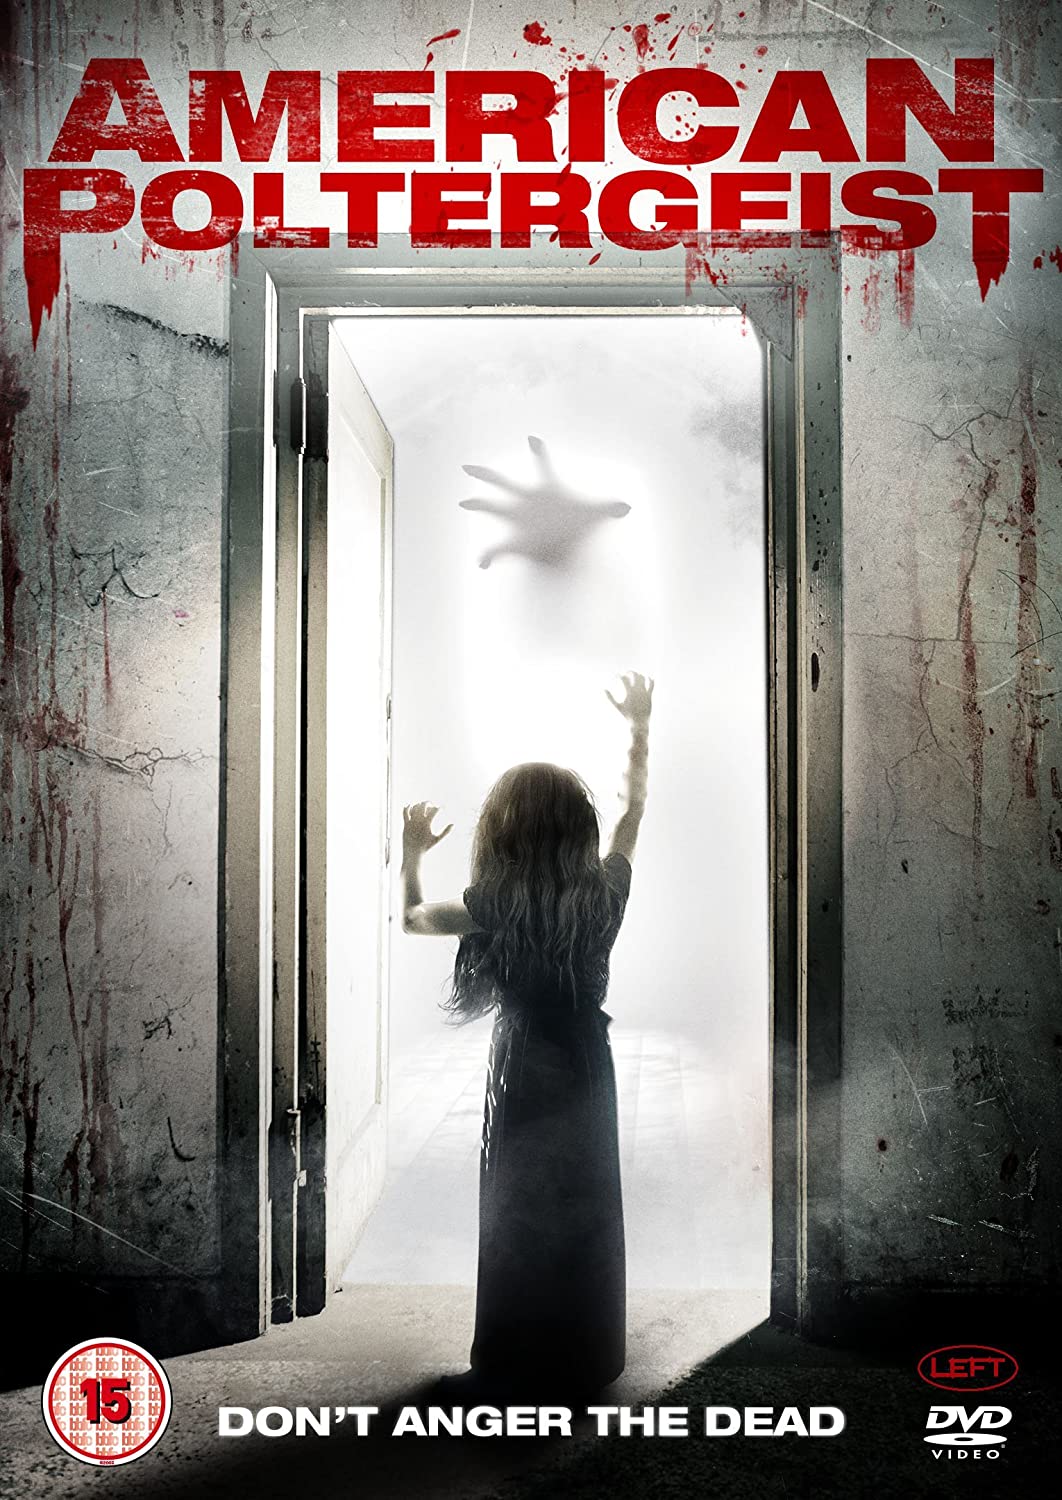 American Poltergeist [DVD]